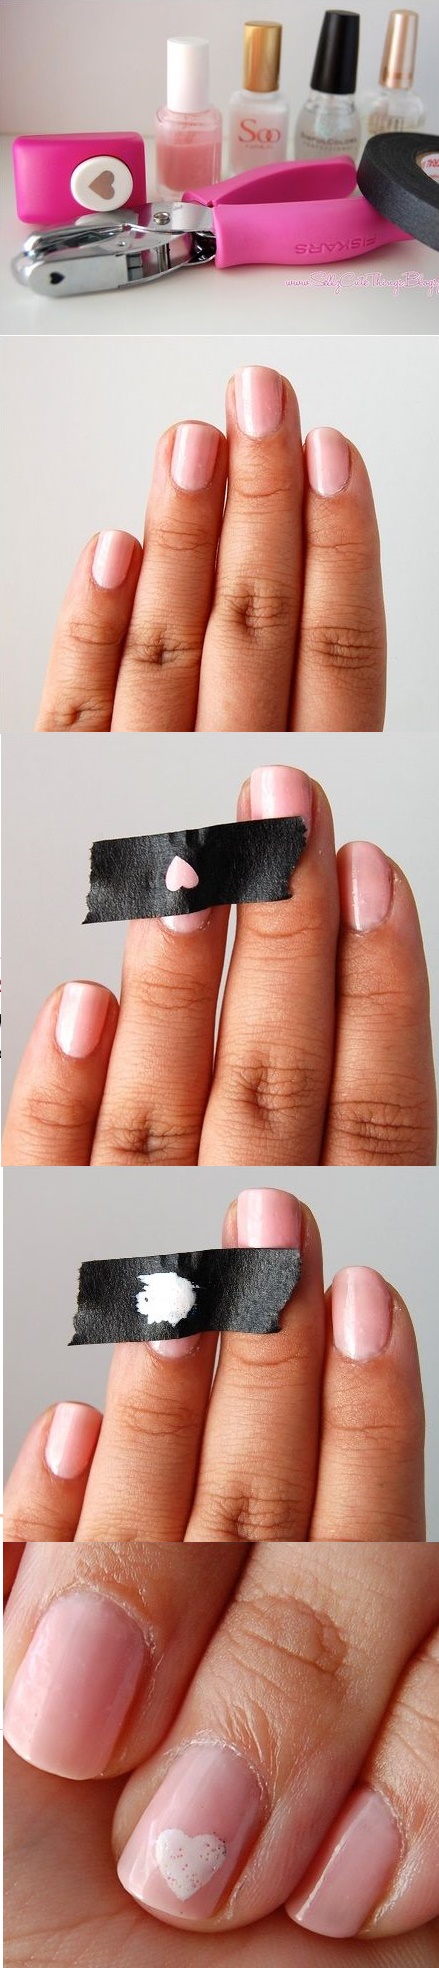 cinta adhesiva uñas